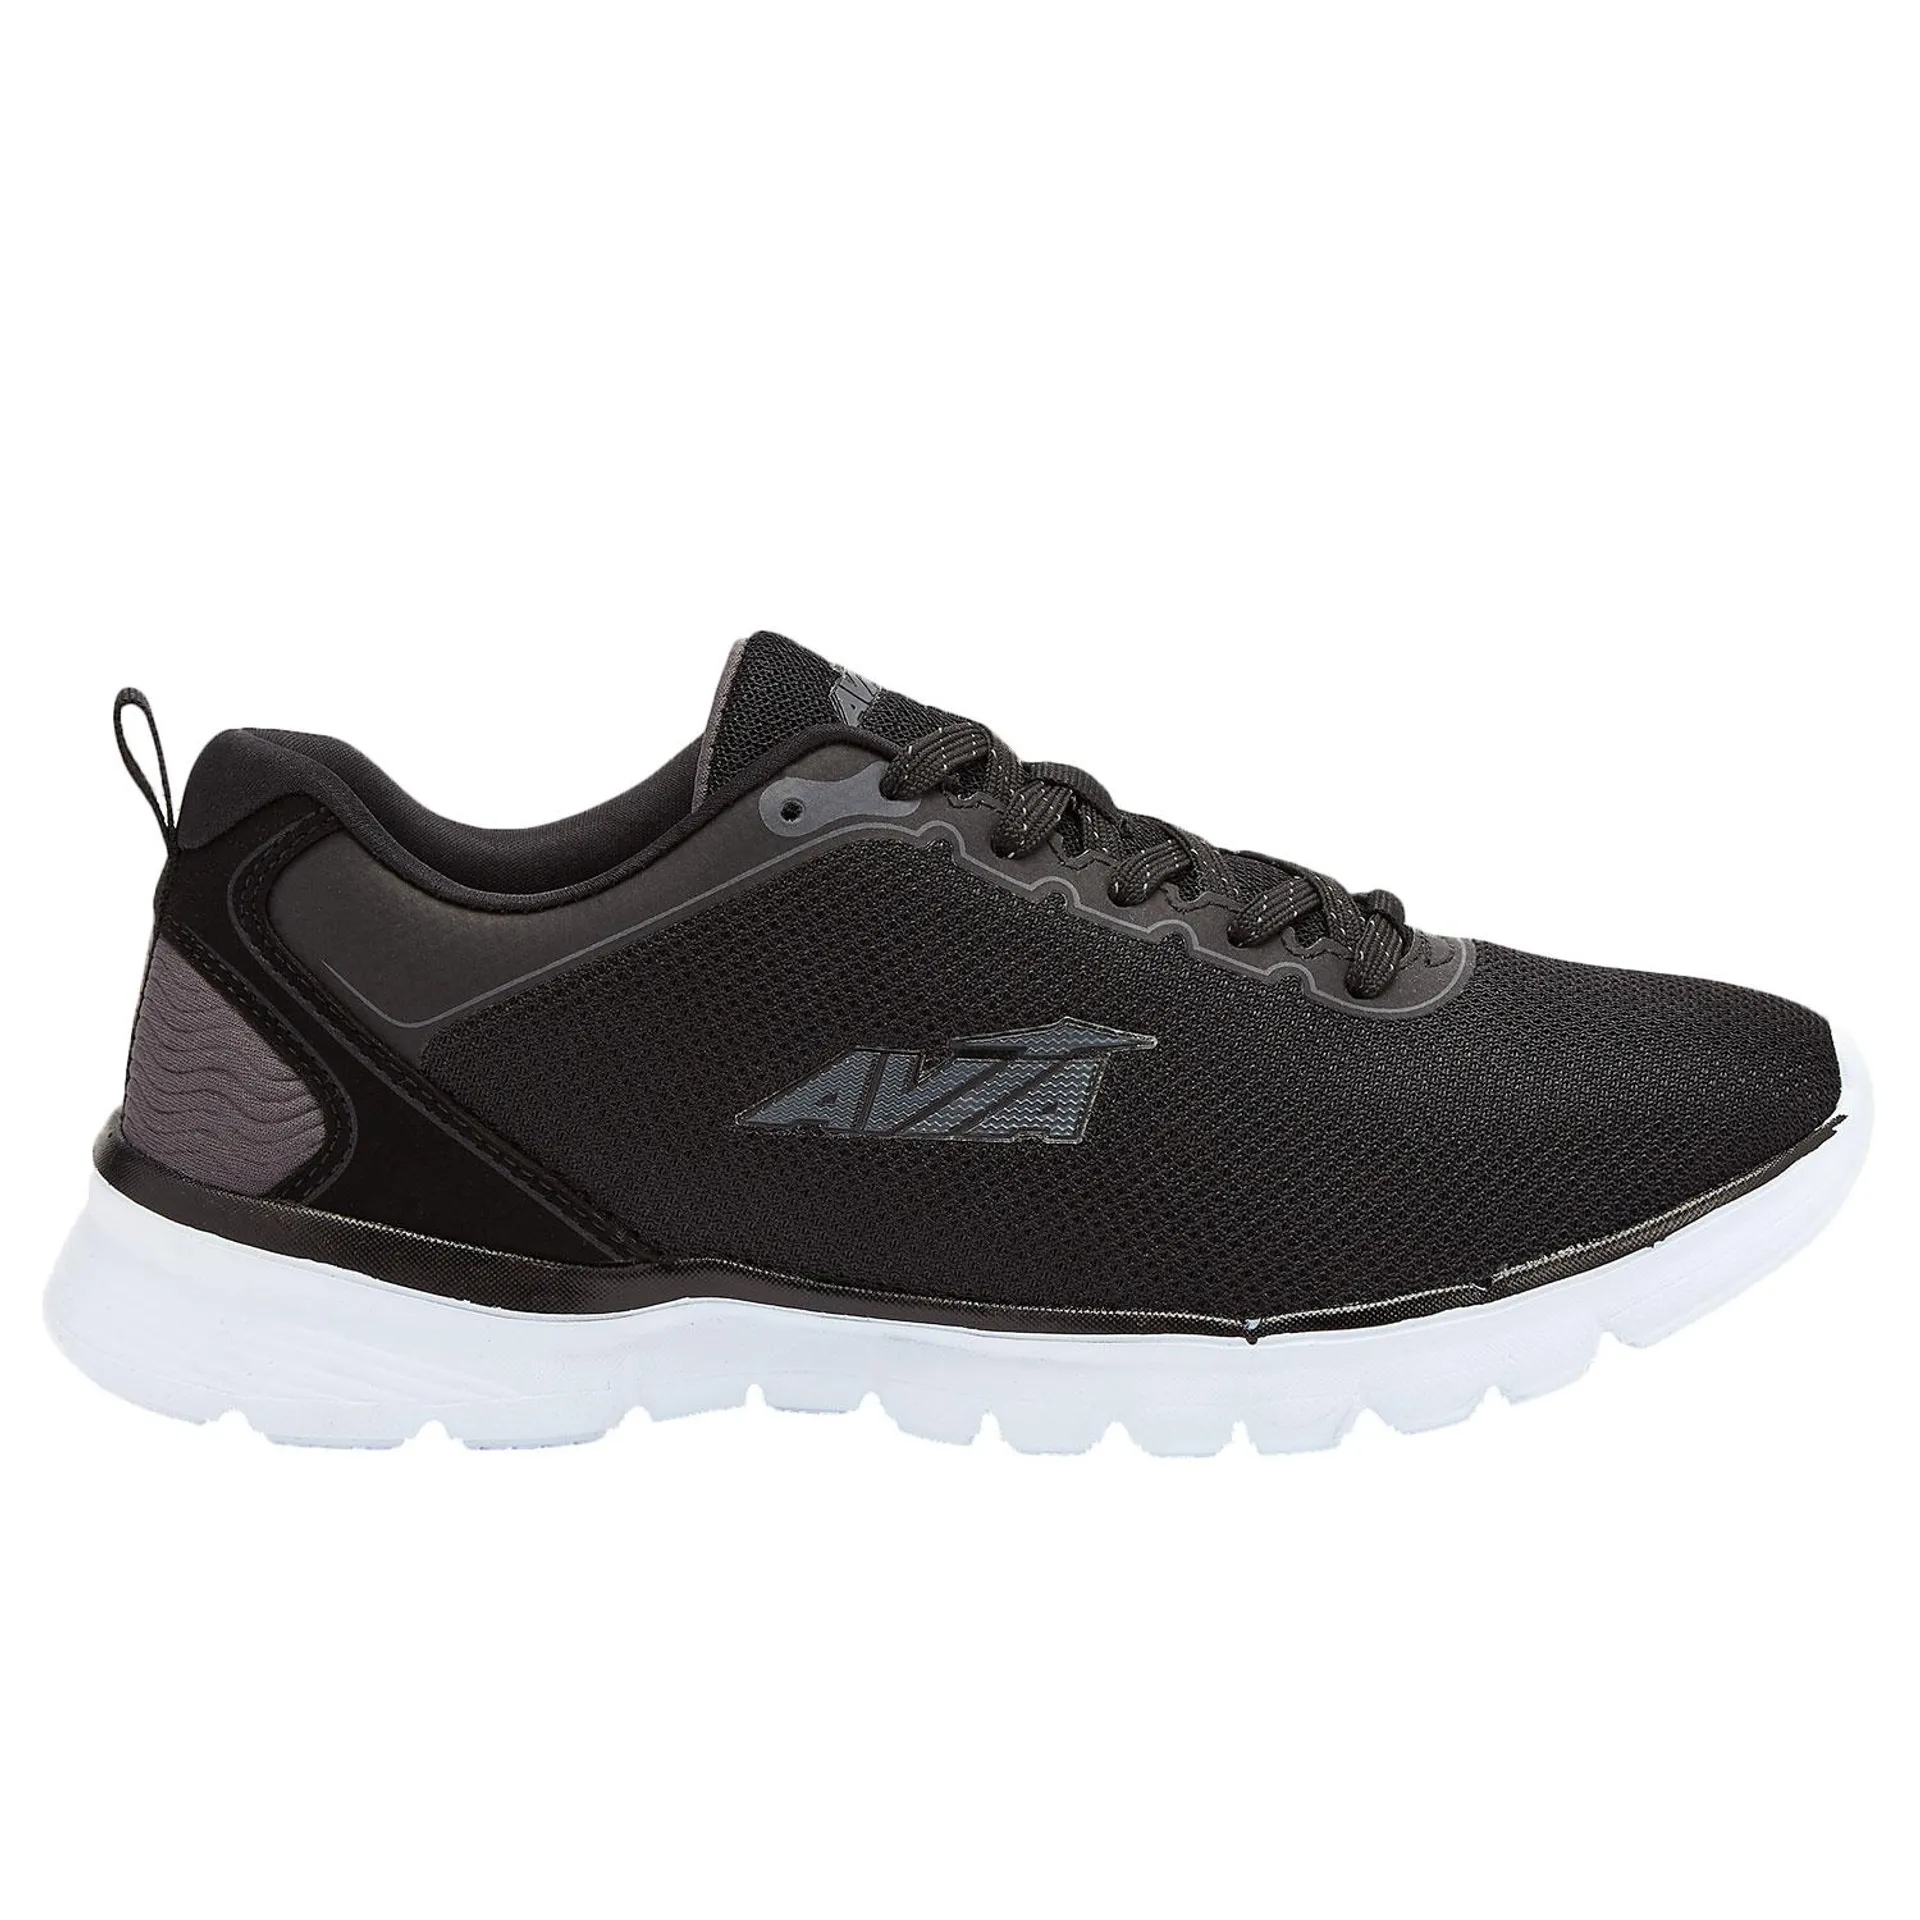 Avia Avi-Factor 2.0 Men's Wide Running Shoes